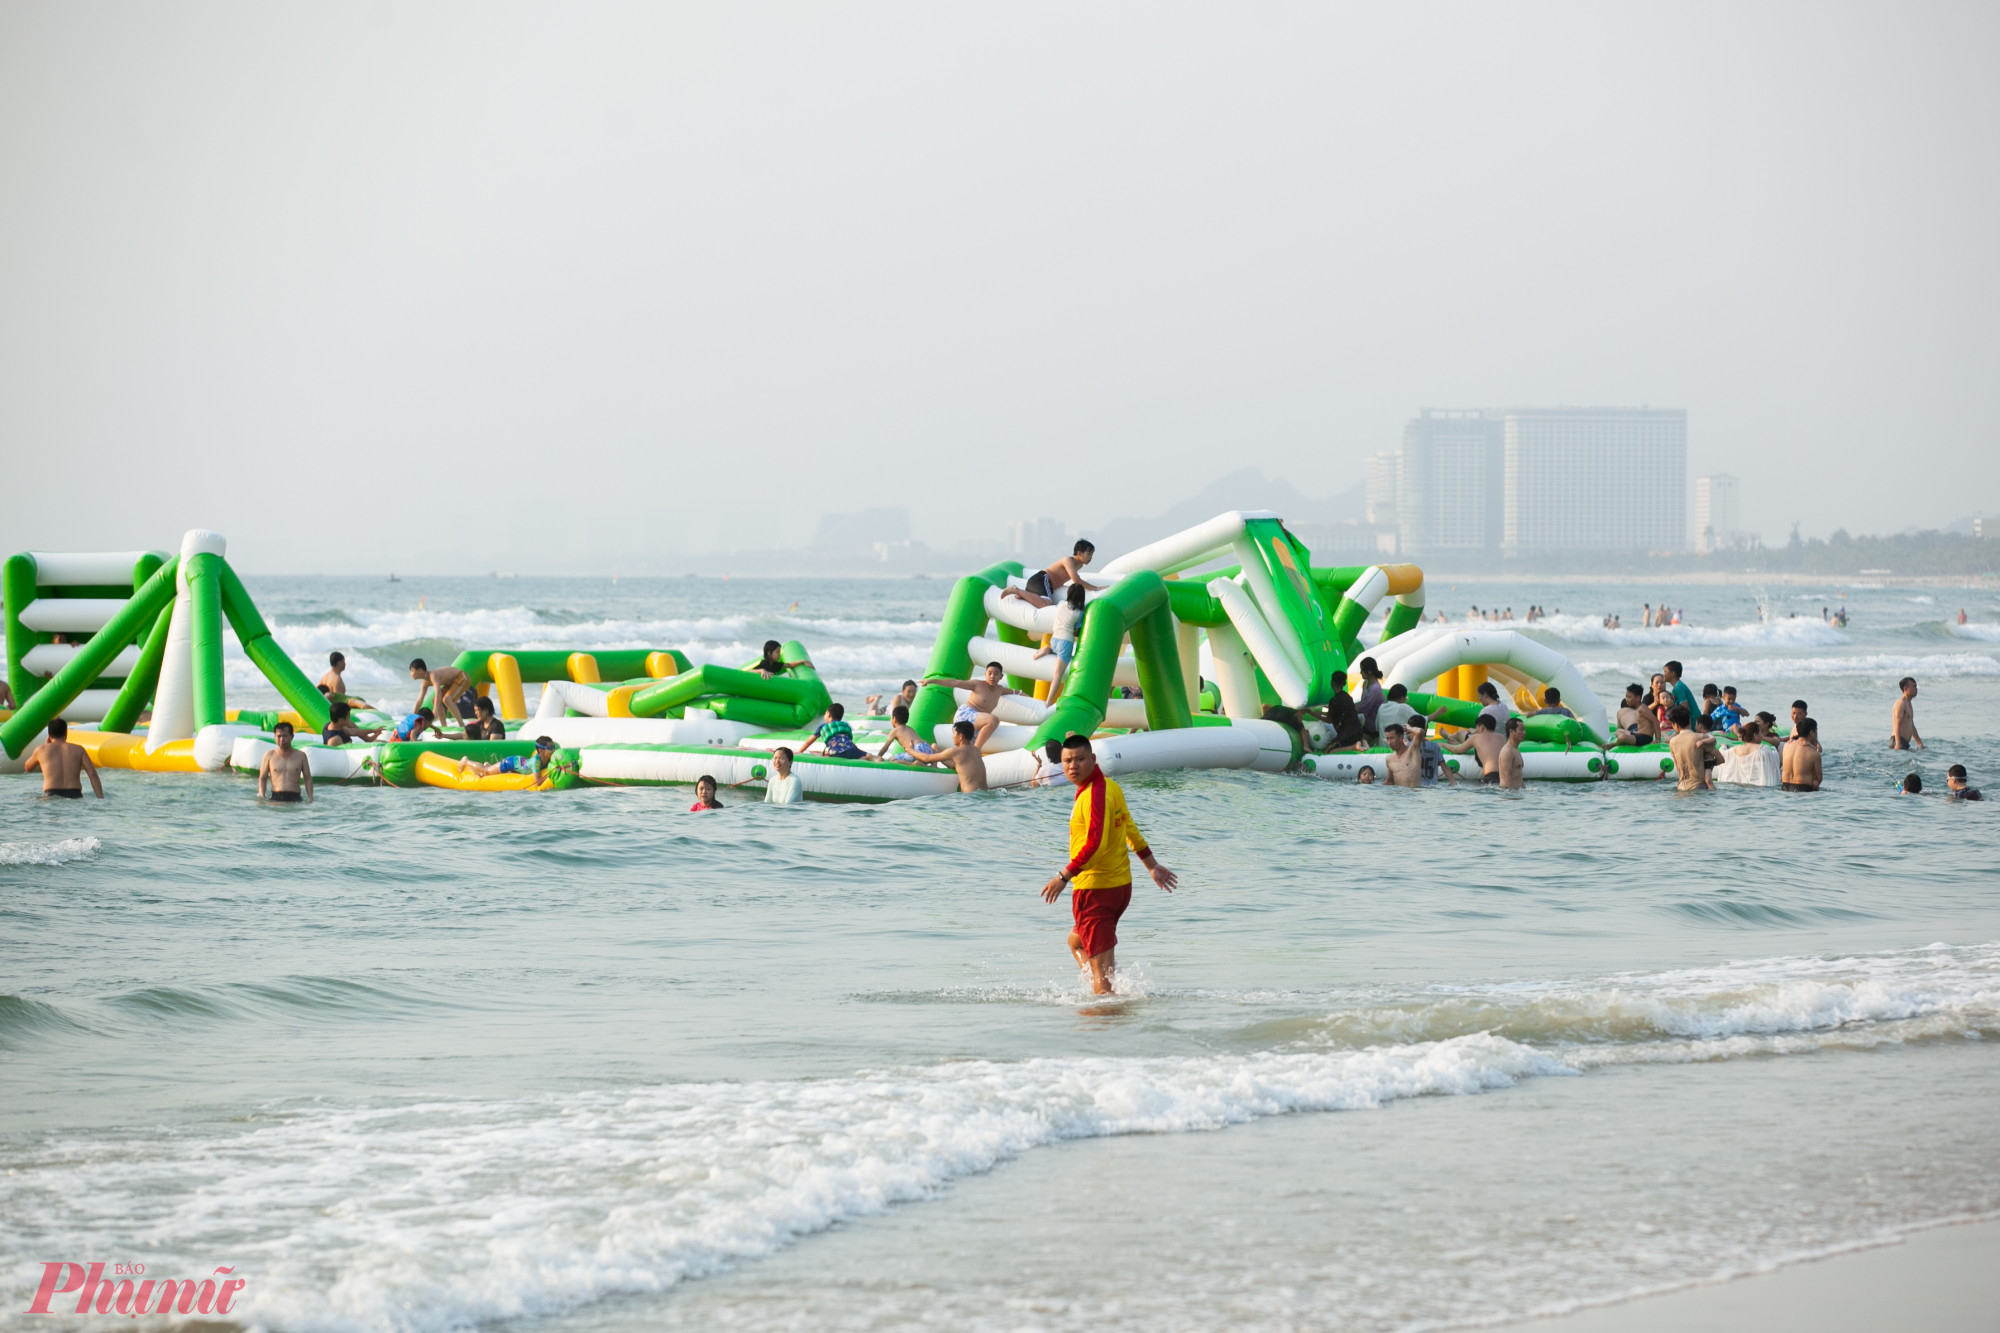 Các hoạt động ở bãi biển Đà Nẵng cũng được tổ chức rất quy củ với lực lượng cứu hộ túc trực thường xuyên